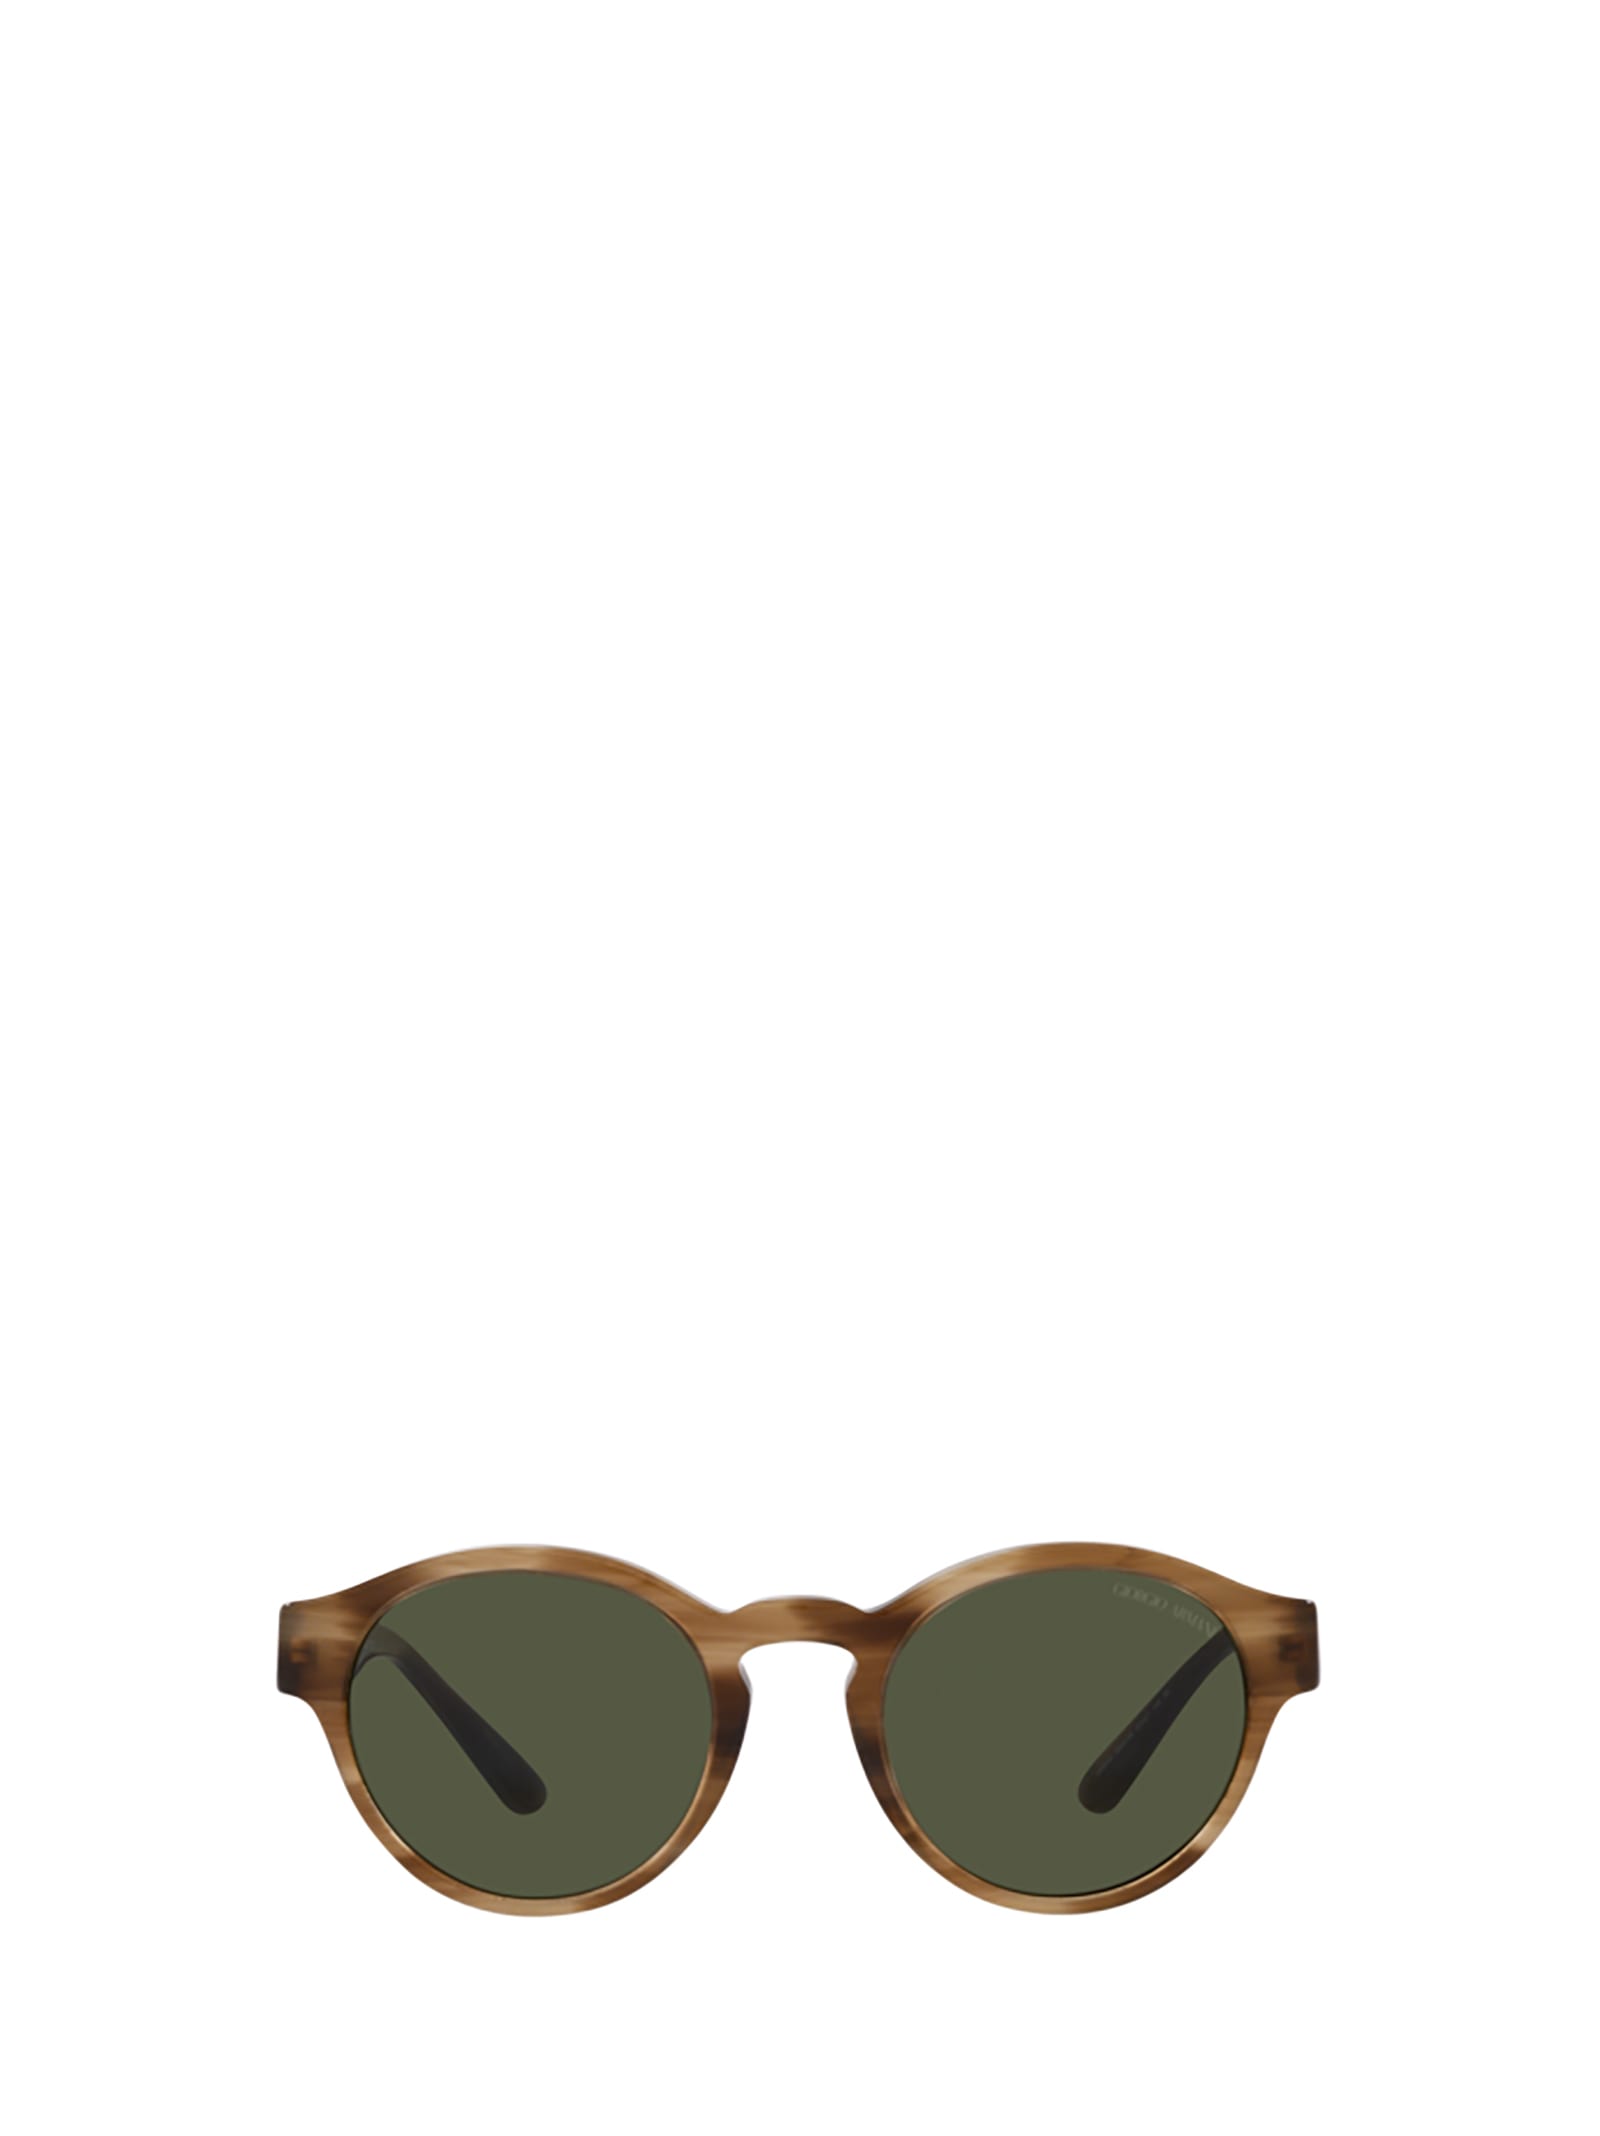 Giorgio Armani Ar8146 Striped Brown Sunglasses